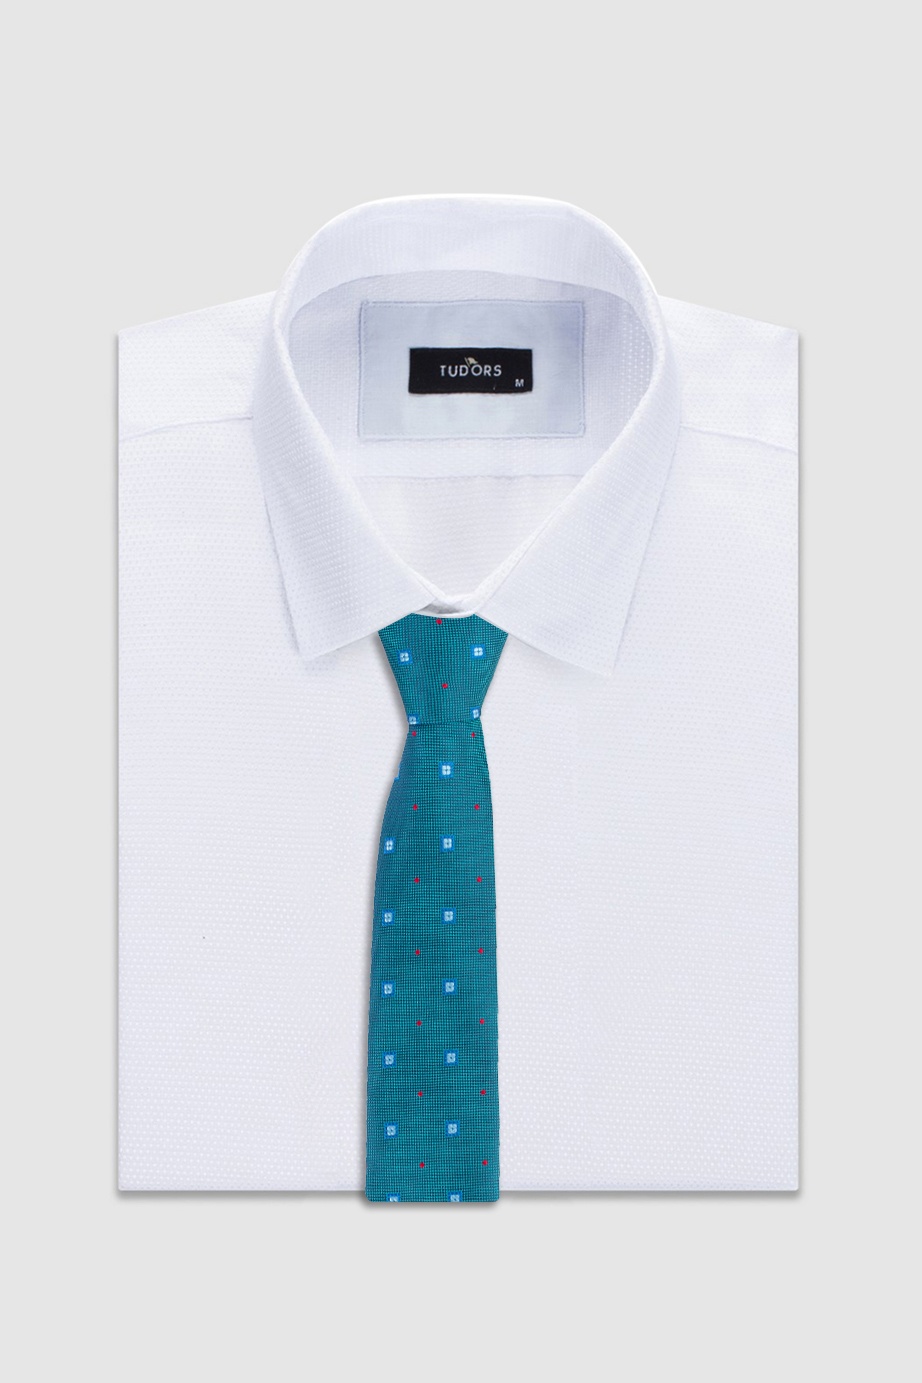 Türkizkék színű kis kocka mintás vékony nyakkendő